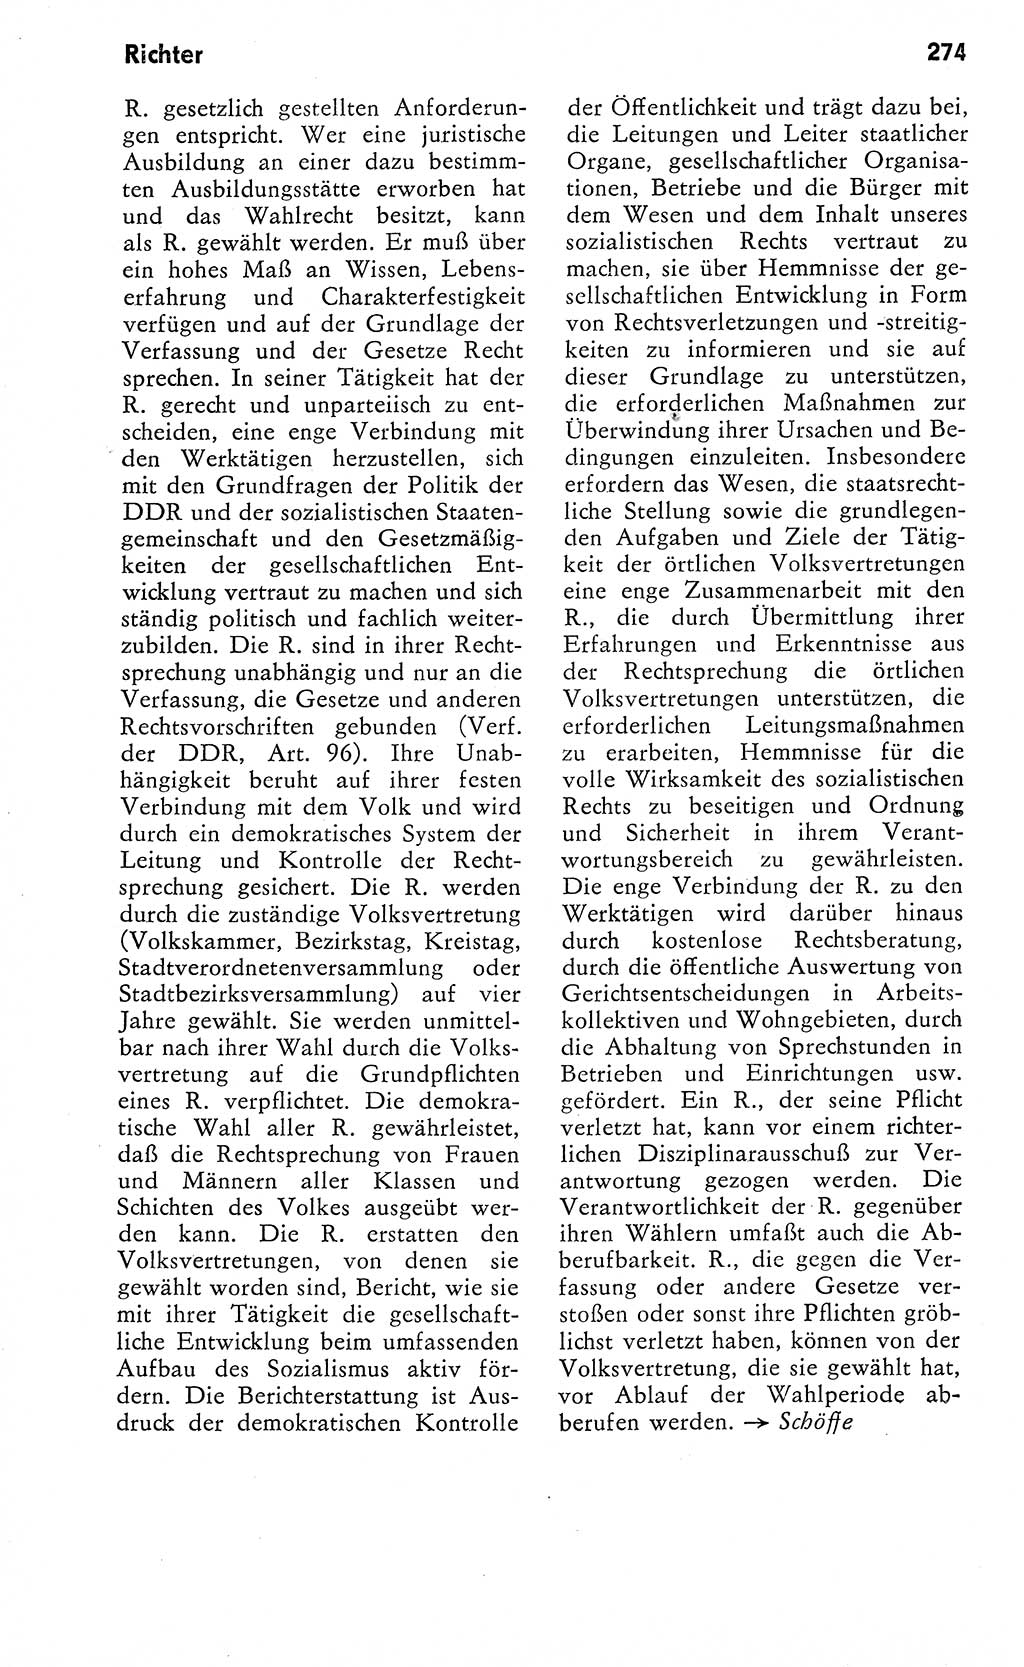 Wörterbuch zum sozialistischen Staat [Deutsche Demokratische Republik (DDR)] 1974, Seite 274 (Wb. soz. St. DDR 1974, S. 274)